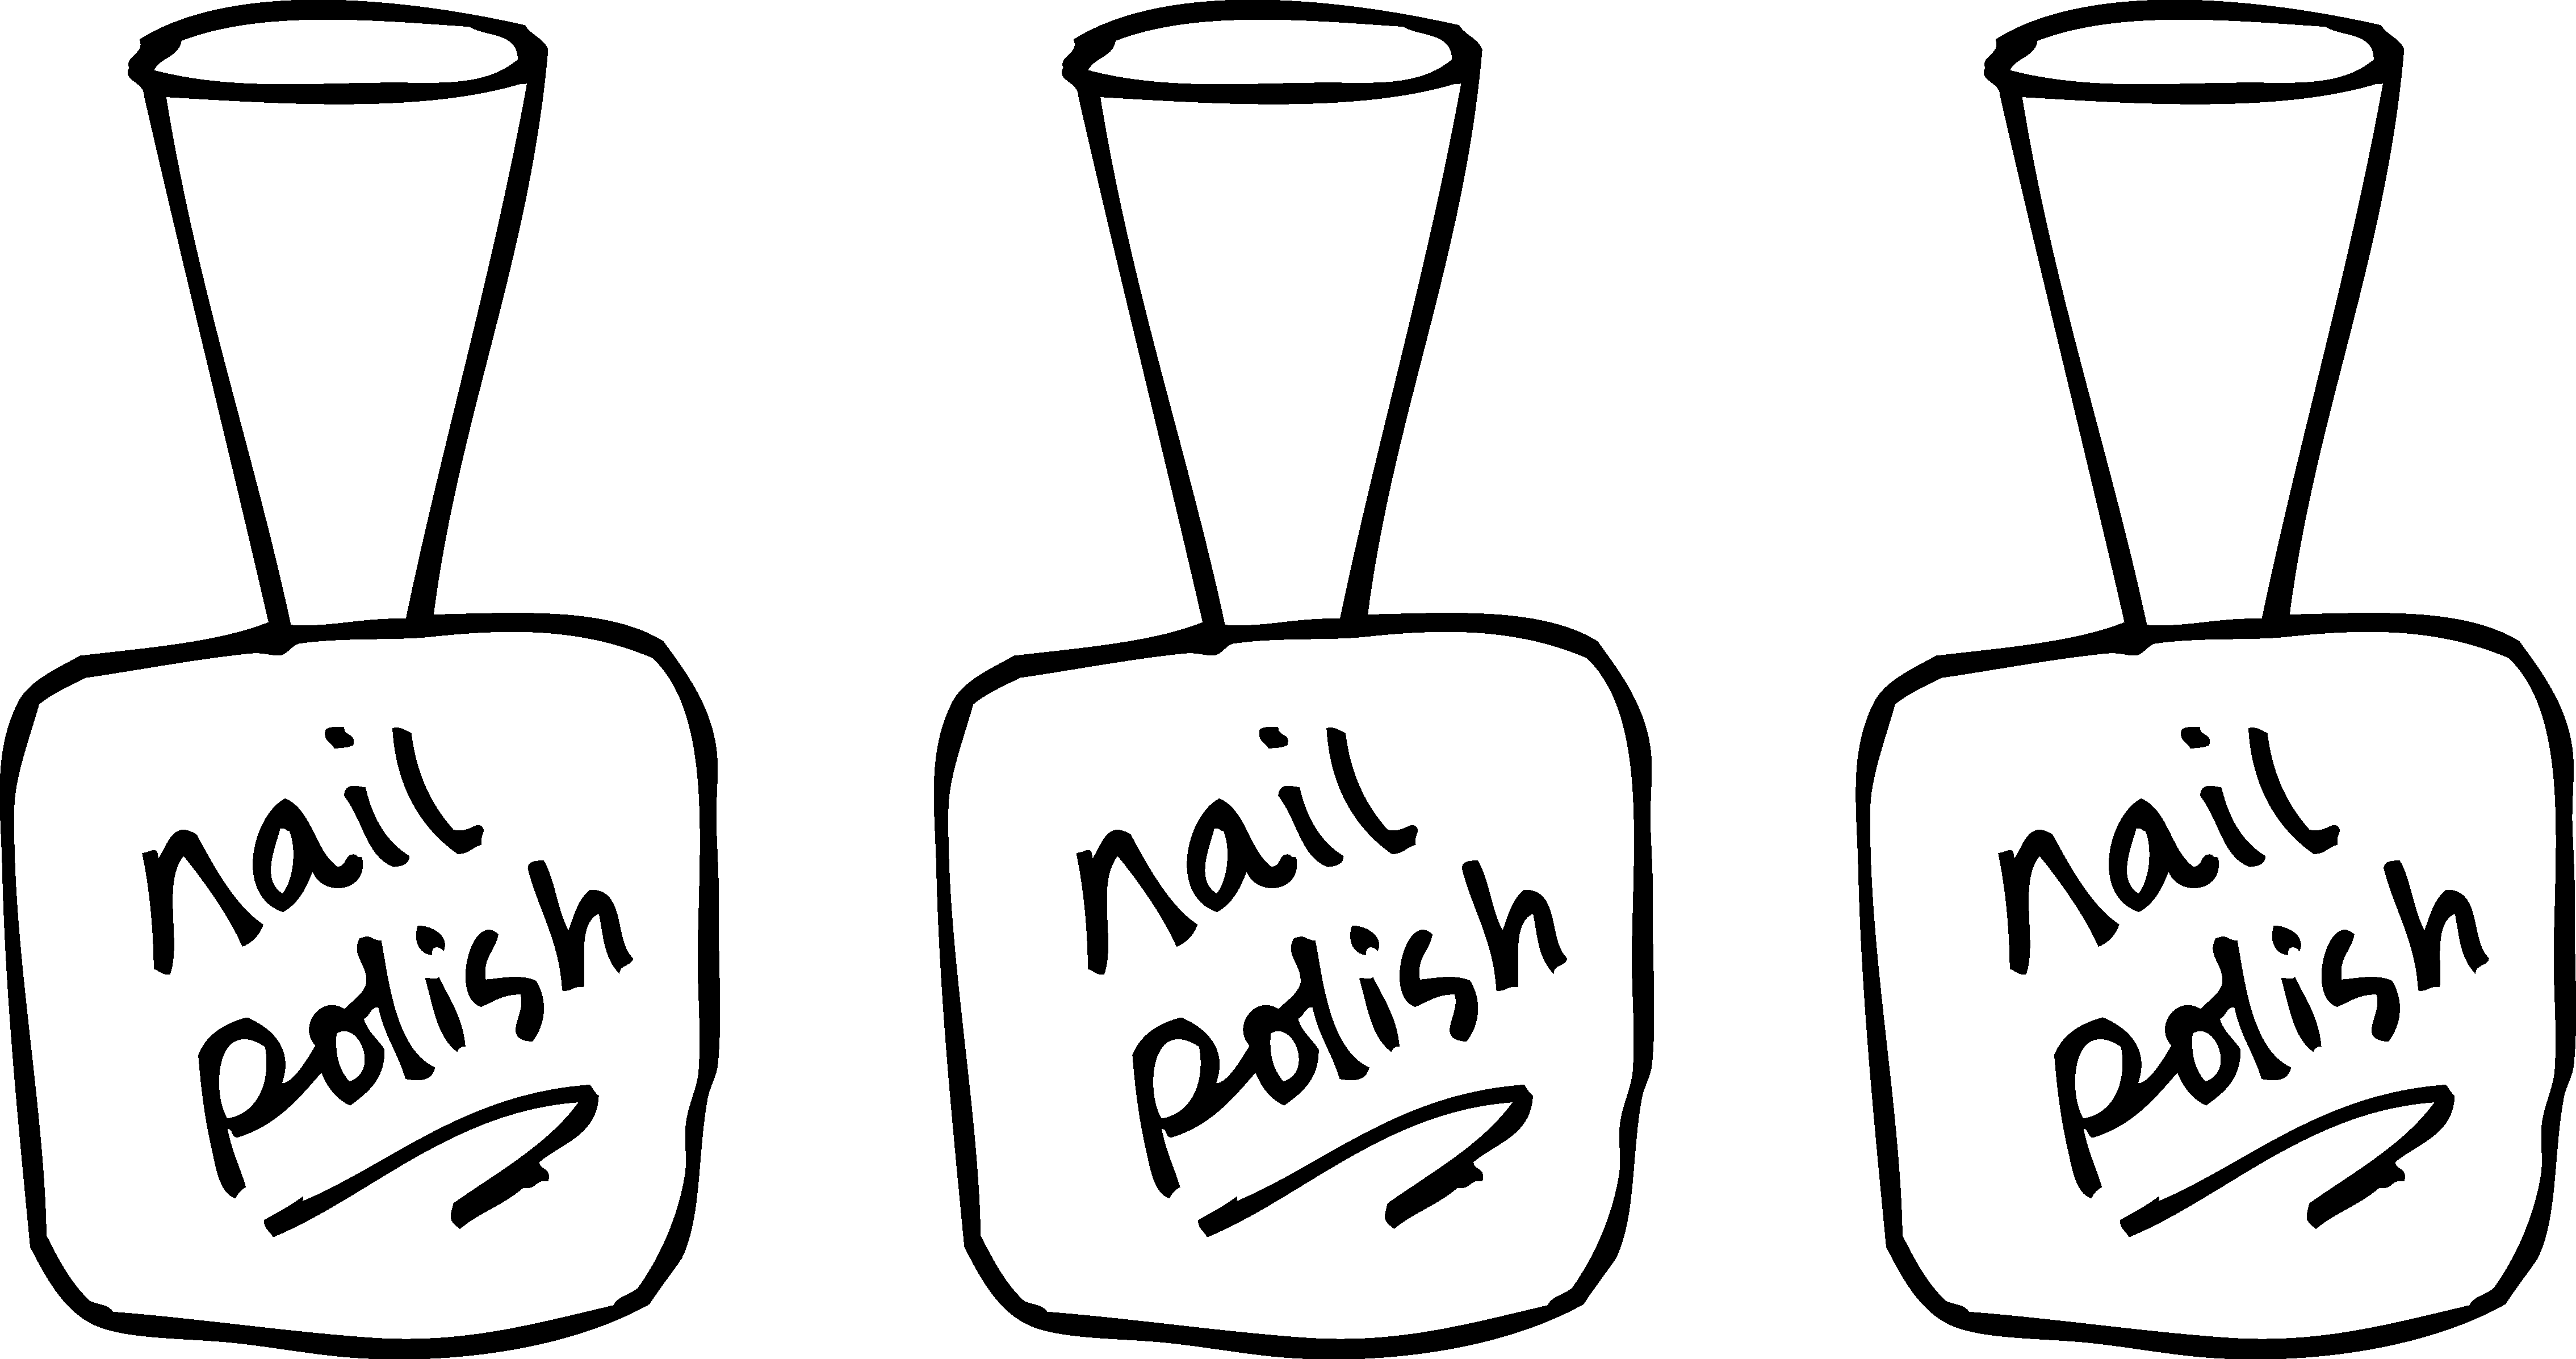 Polish coloring page free. Nails clipart woman nail